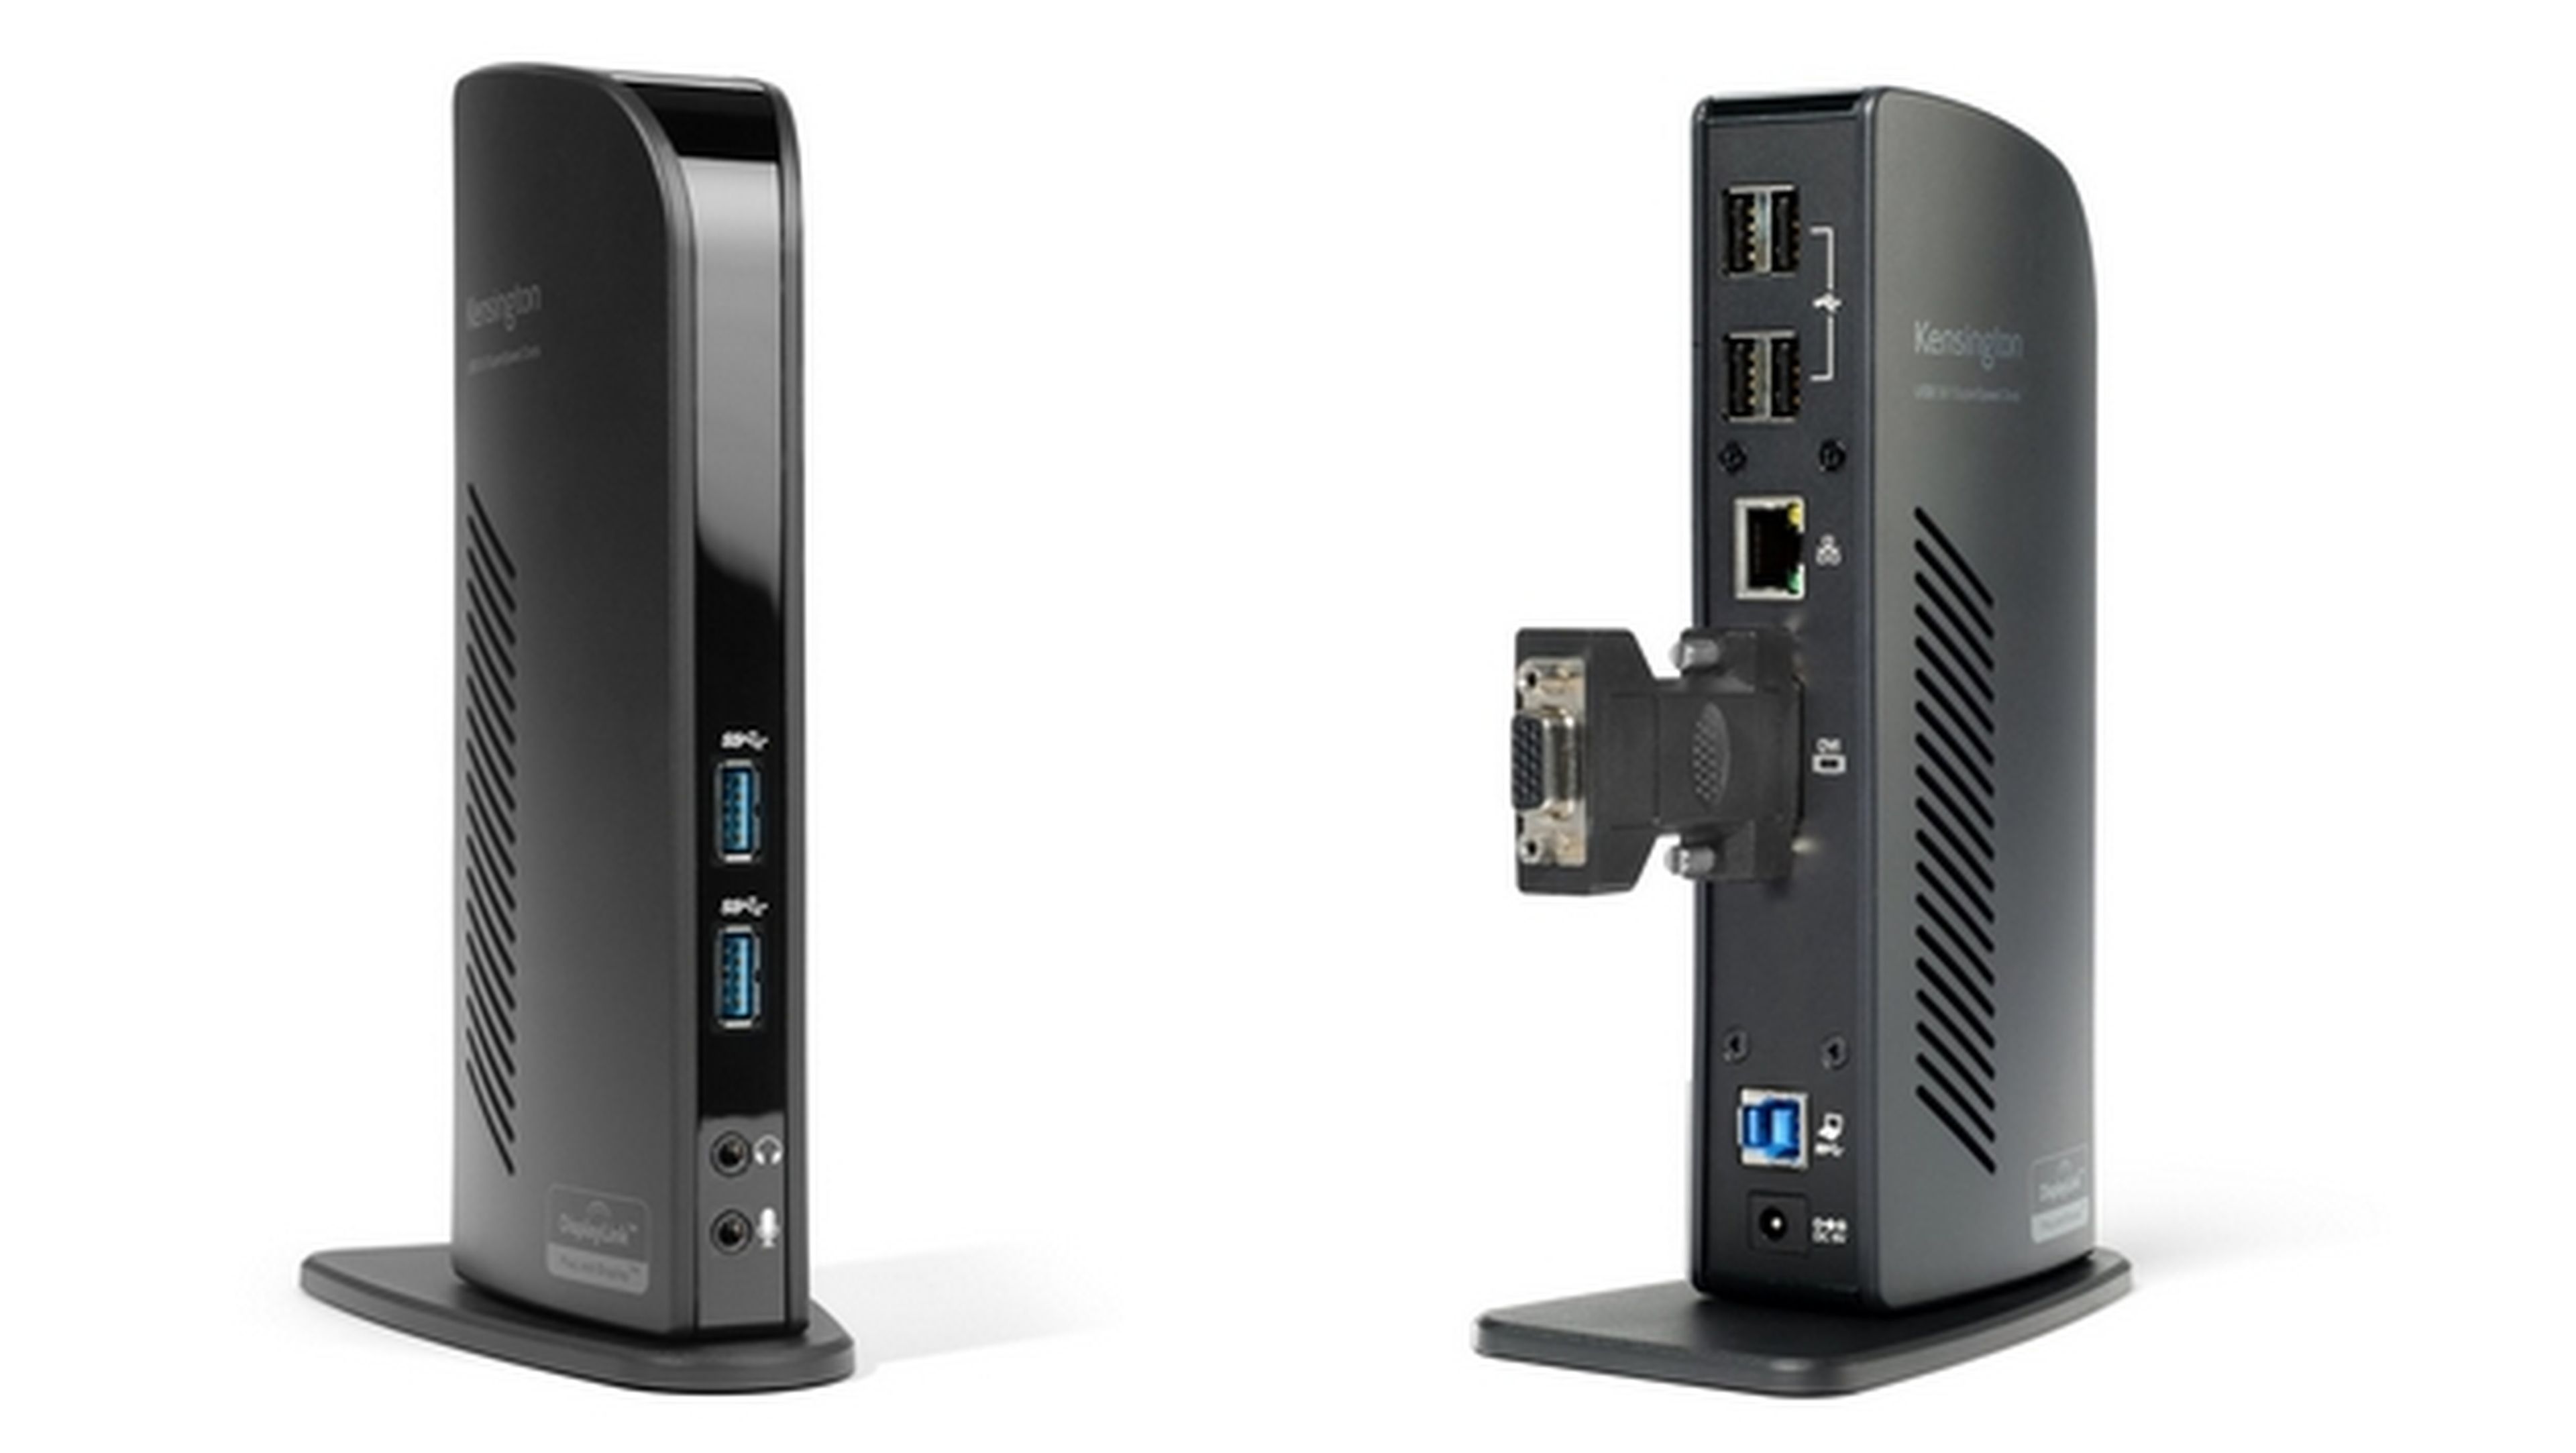 El replicador de puertos USB 3.0 mejora la productividad de tu PC o Mac al añadir seis puertos USB y escritorio compartirdo en todo tipo de pantallas, con la tecnología DisplayLink.